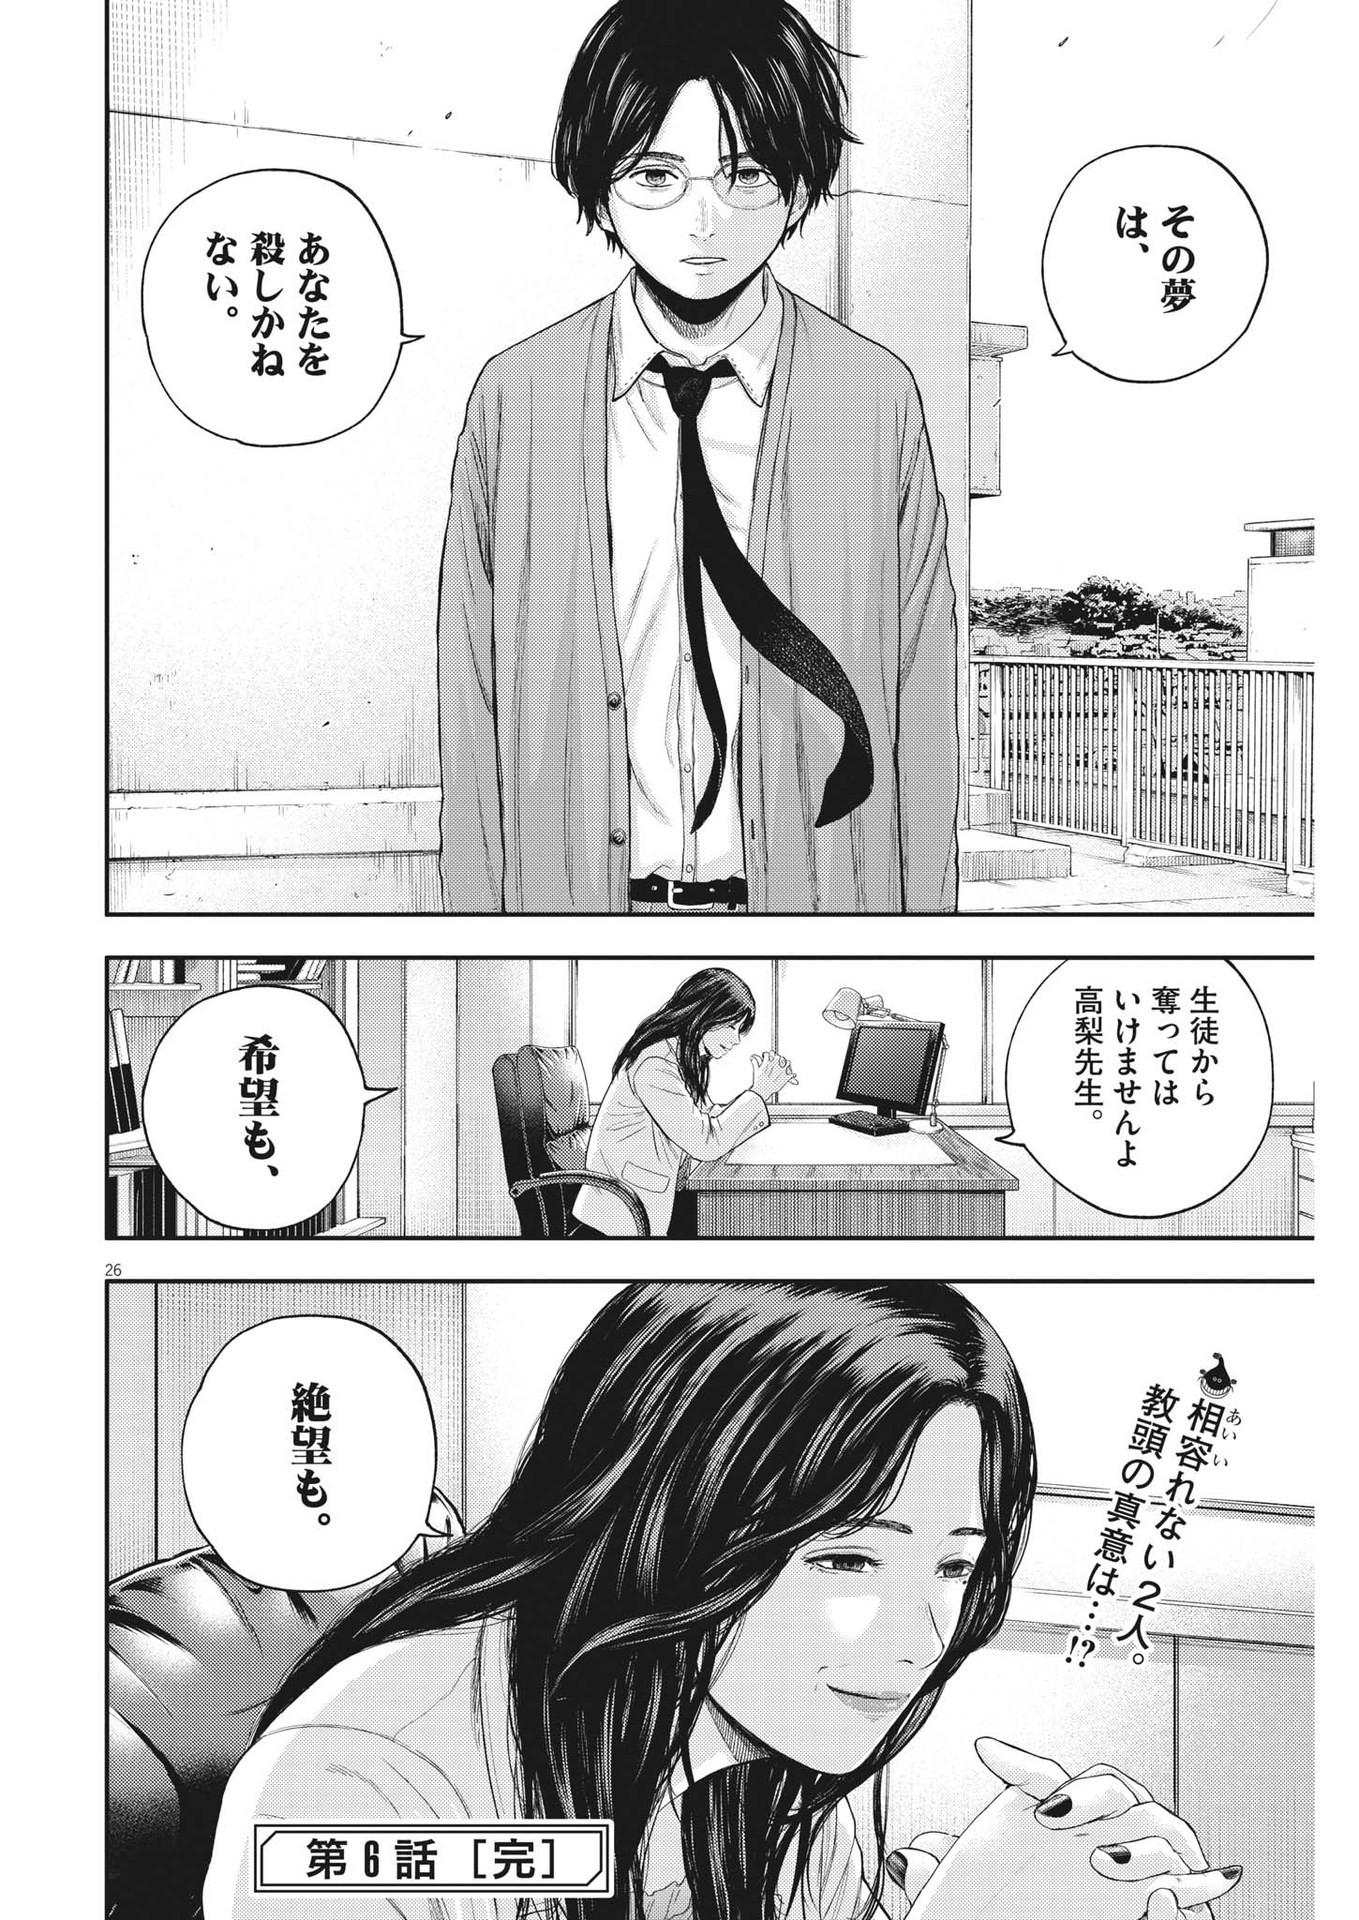 Yumenashi-sensei no Shinroshidou - Chapter 6 - Page 26